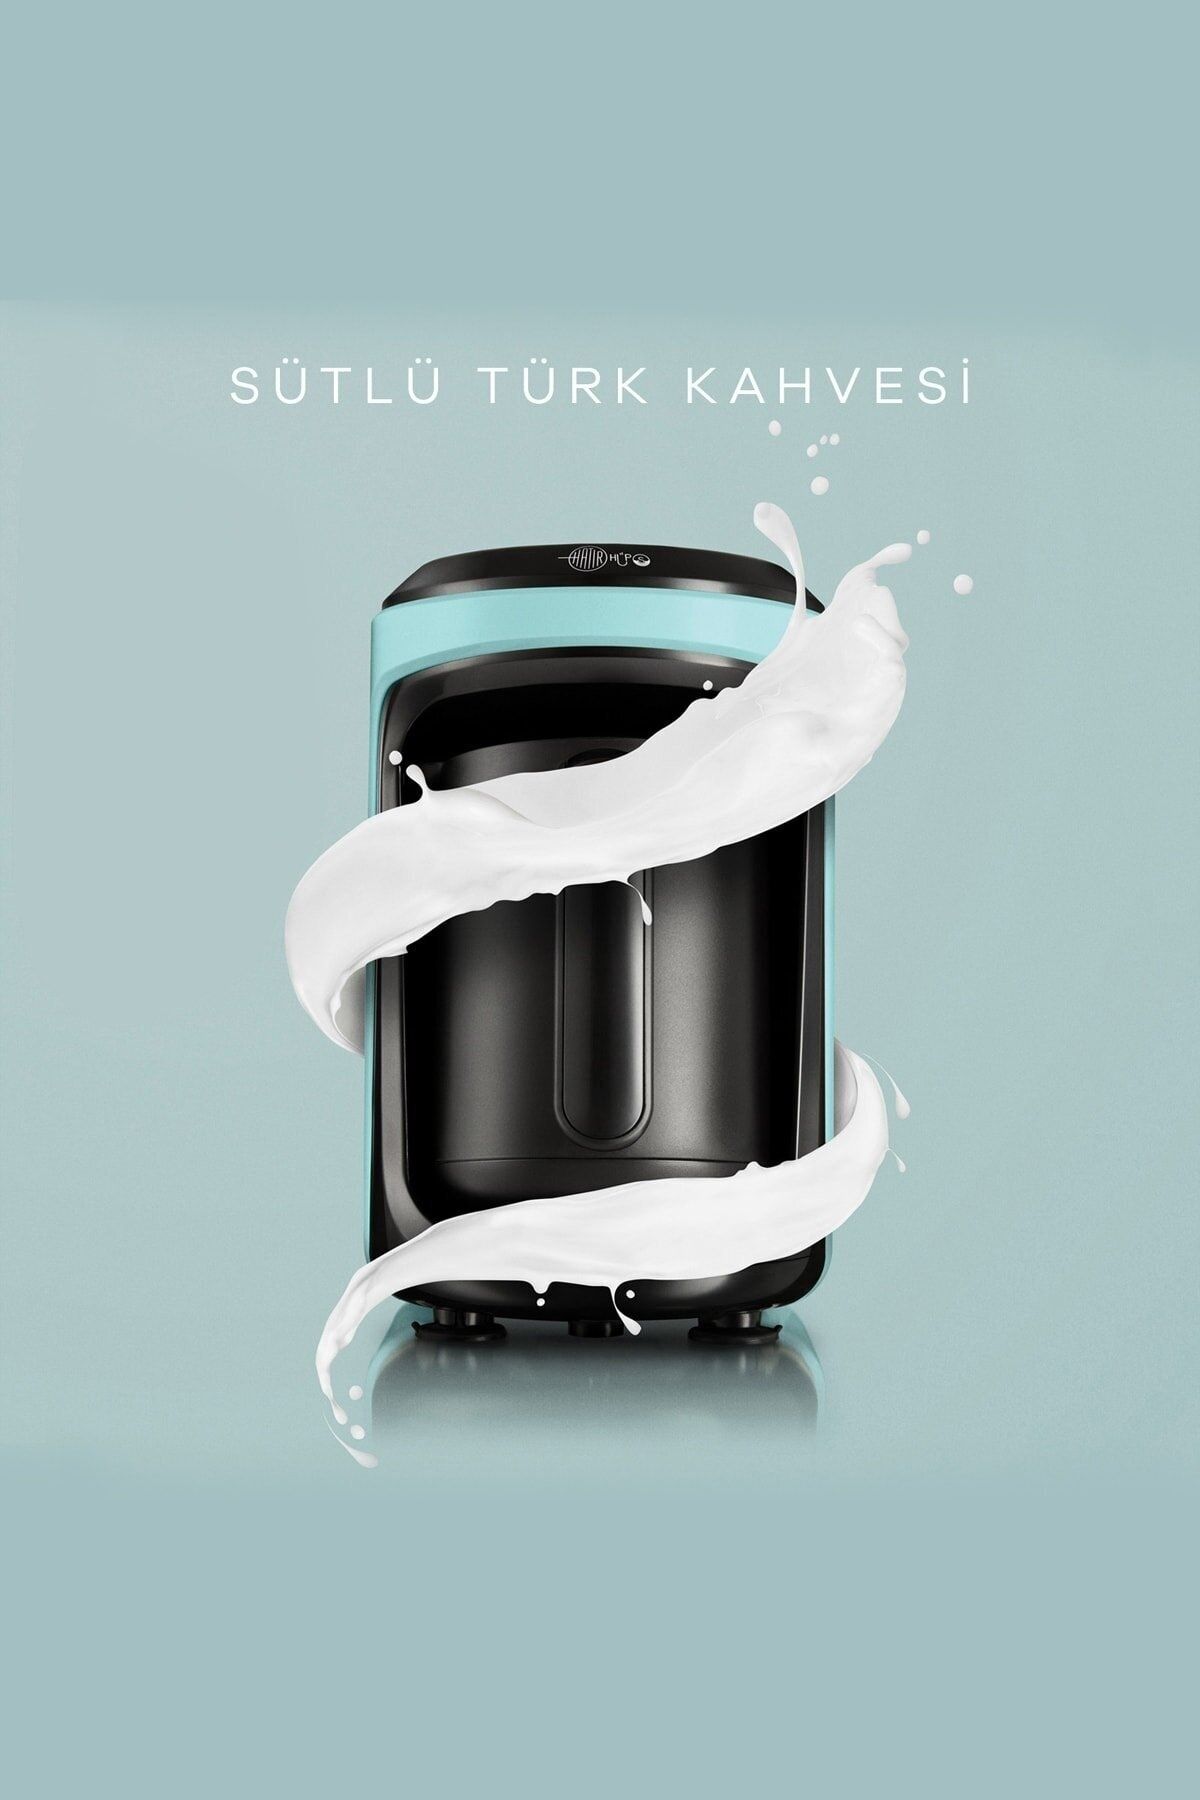 Karaca Hatır Hüps Sütlü Türk Kahve Makinesi Aqua Green